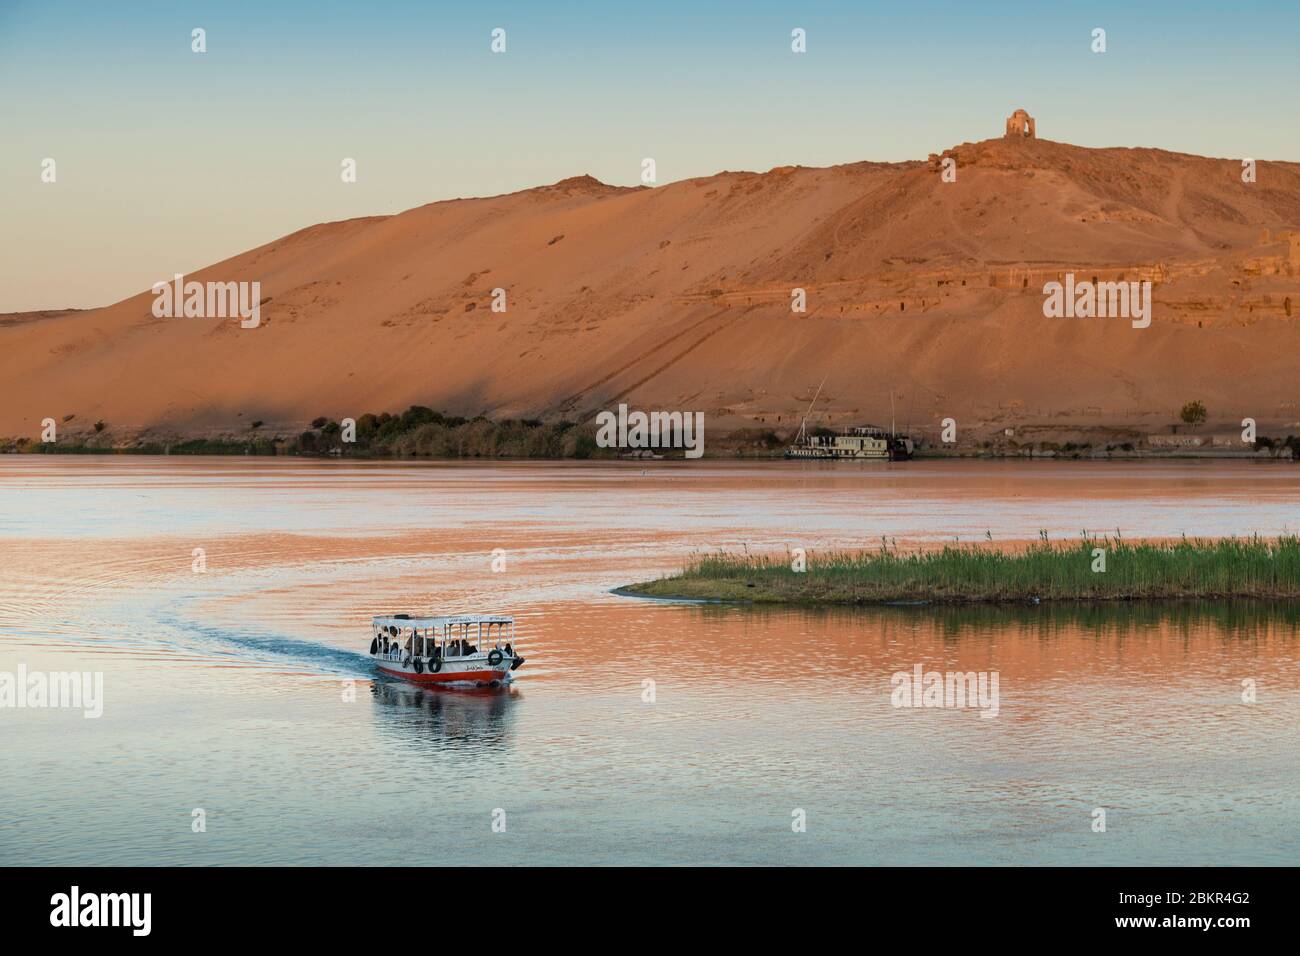 Égypte, haute Égypte, vallée du Nil, Assouan, bateau touristique sur le Nil avec le mausolée Aga Khan en arrière-plan Banque D'Images